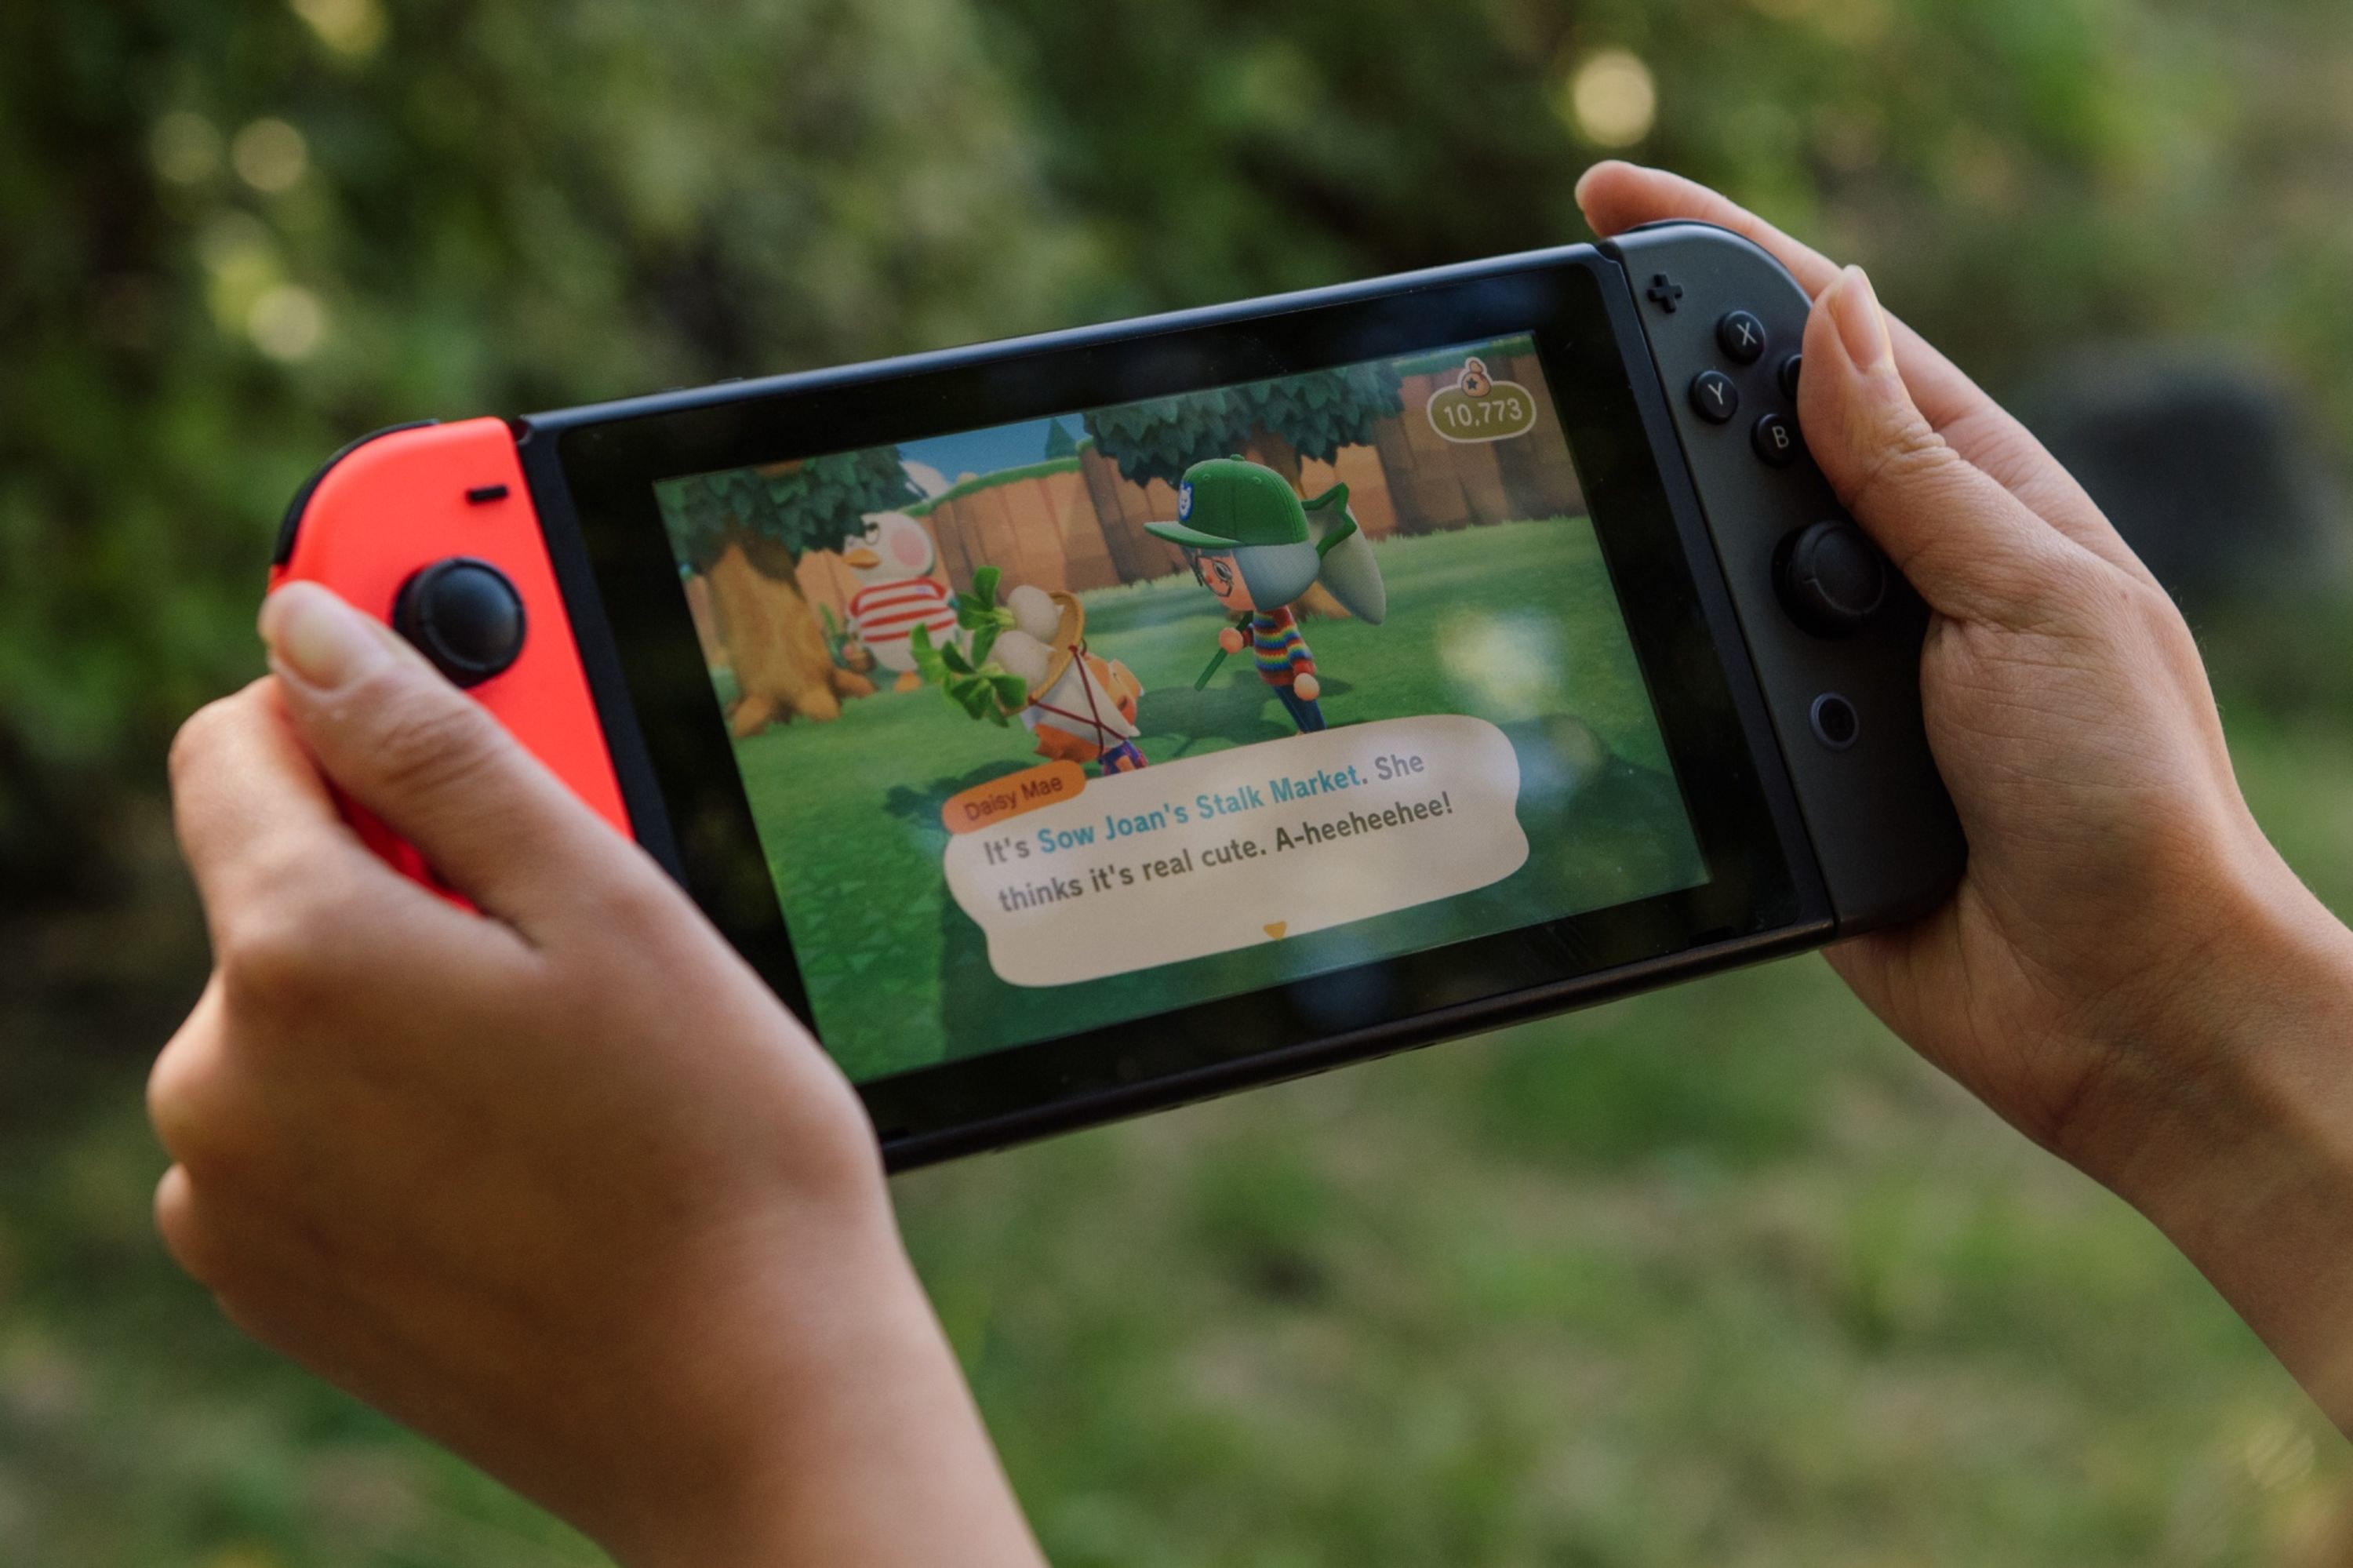 Nintendo Switch Console Animal Crossing: nuevo juego Paraguay